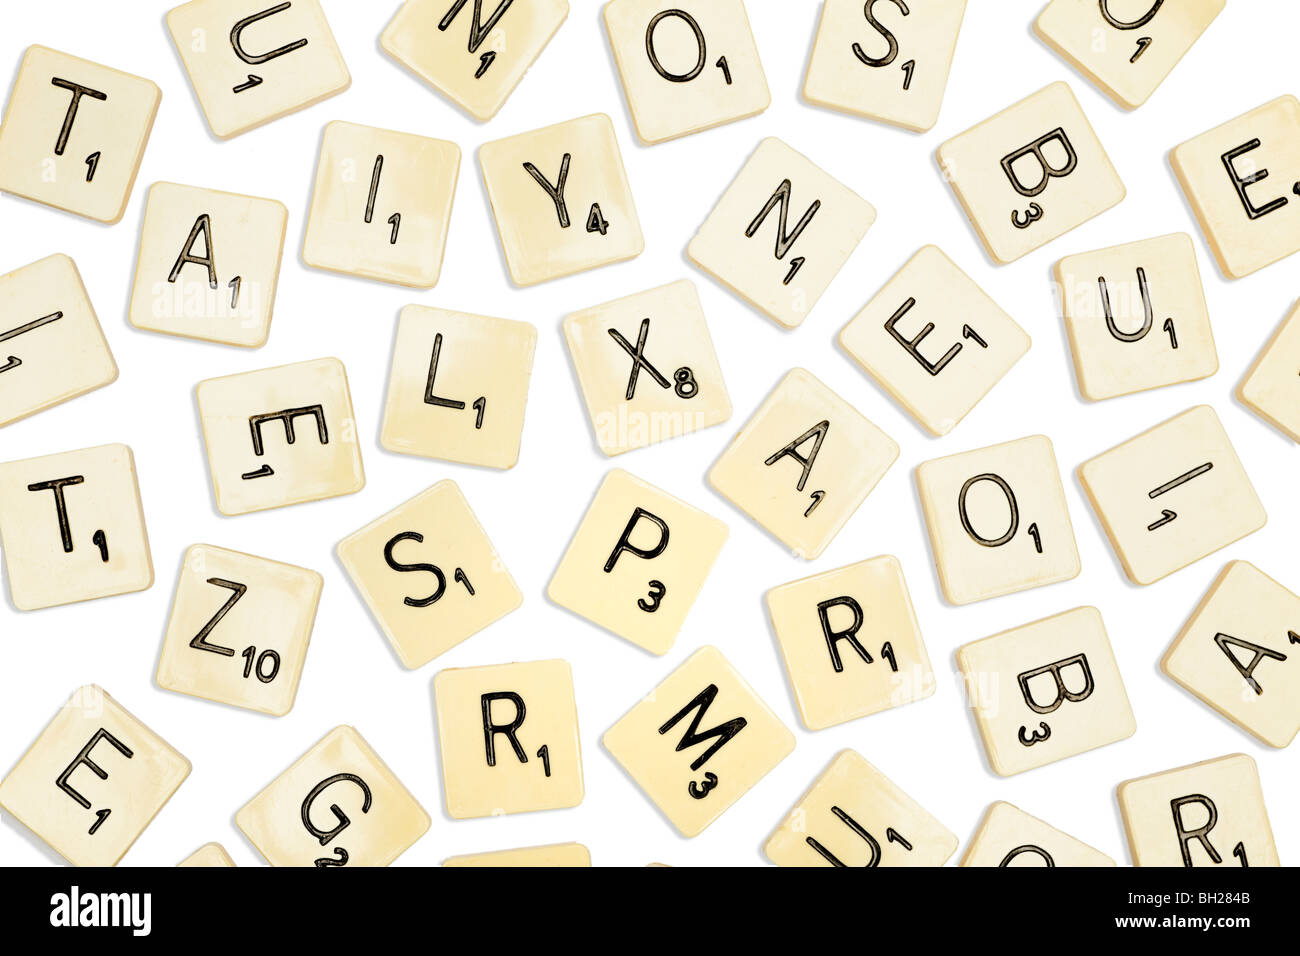 Mattonelle di Scrabble Foto Stock